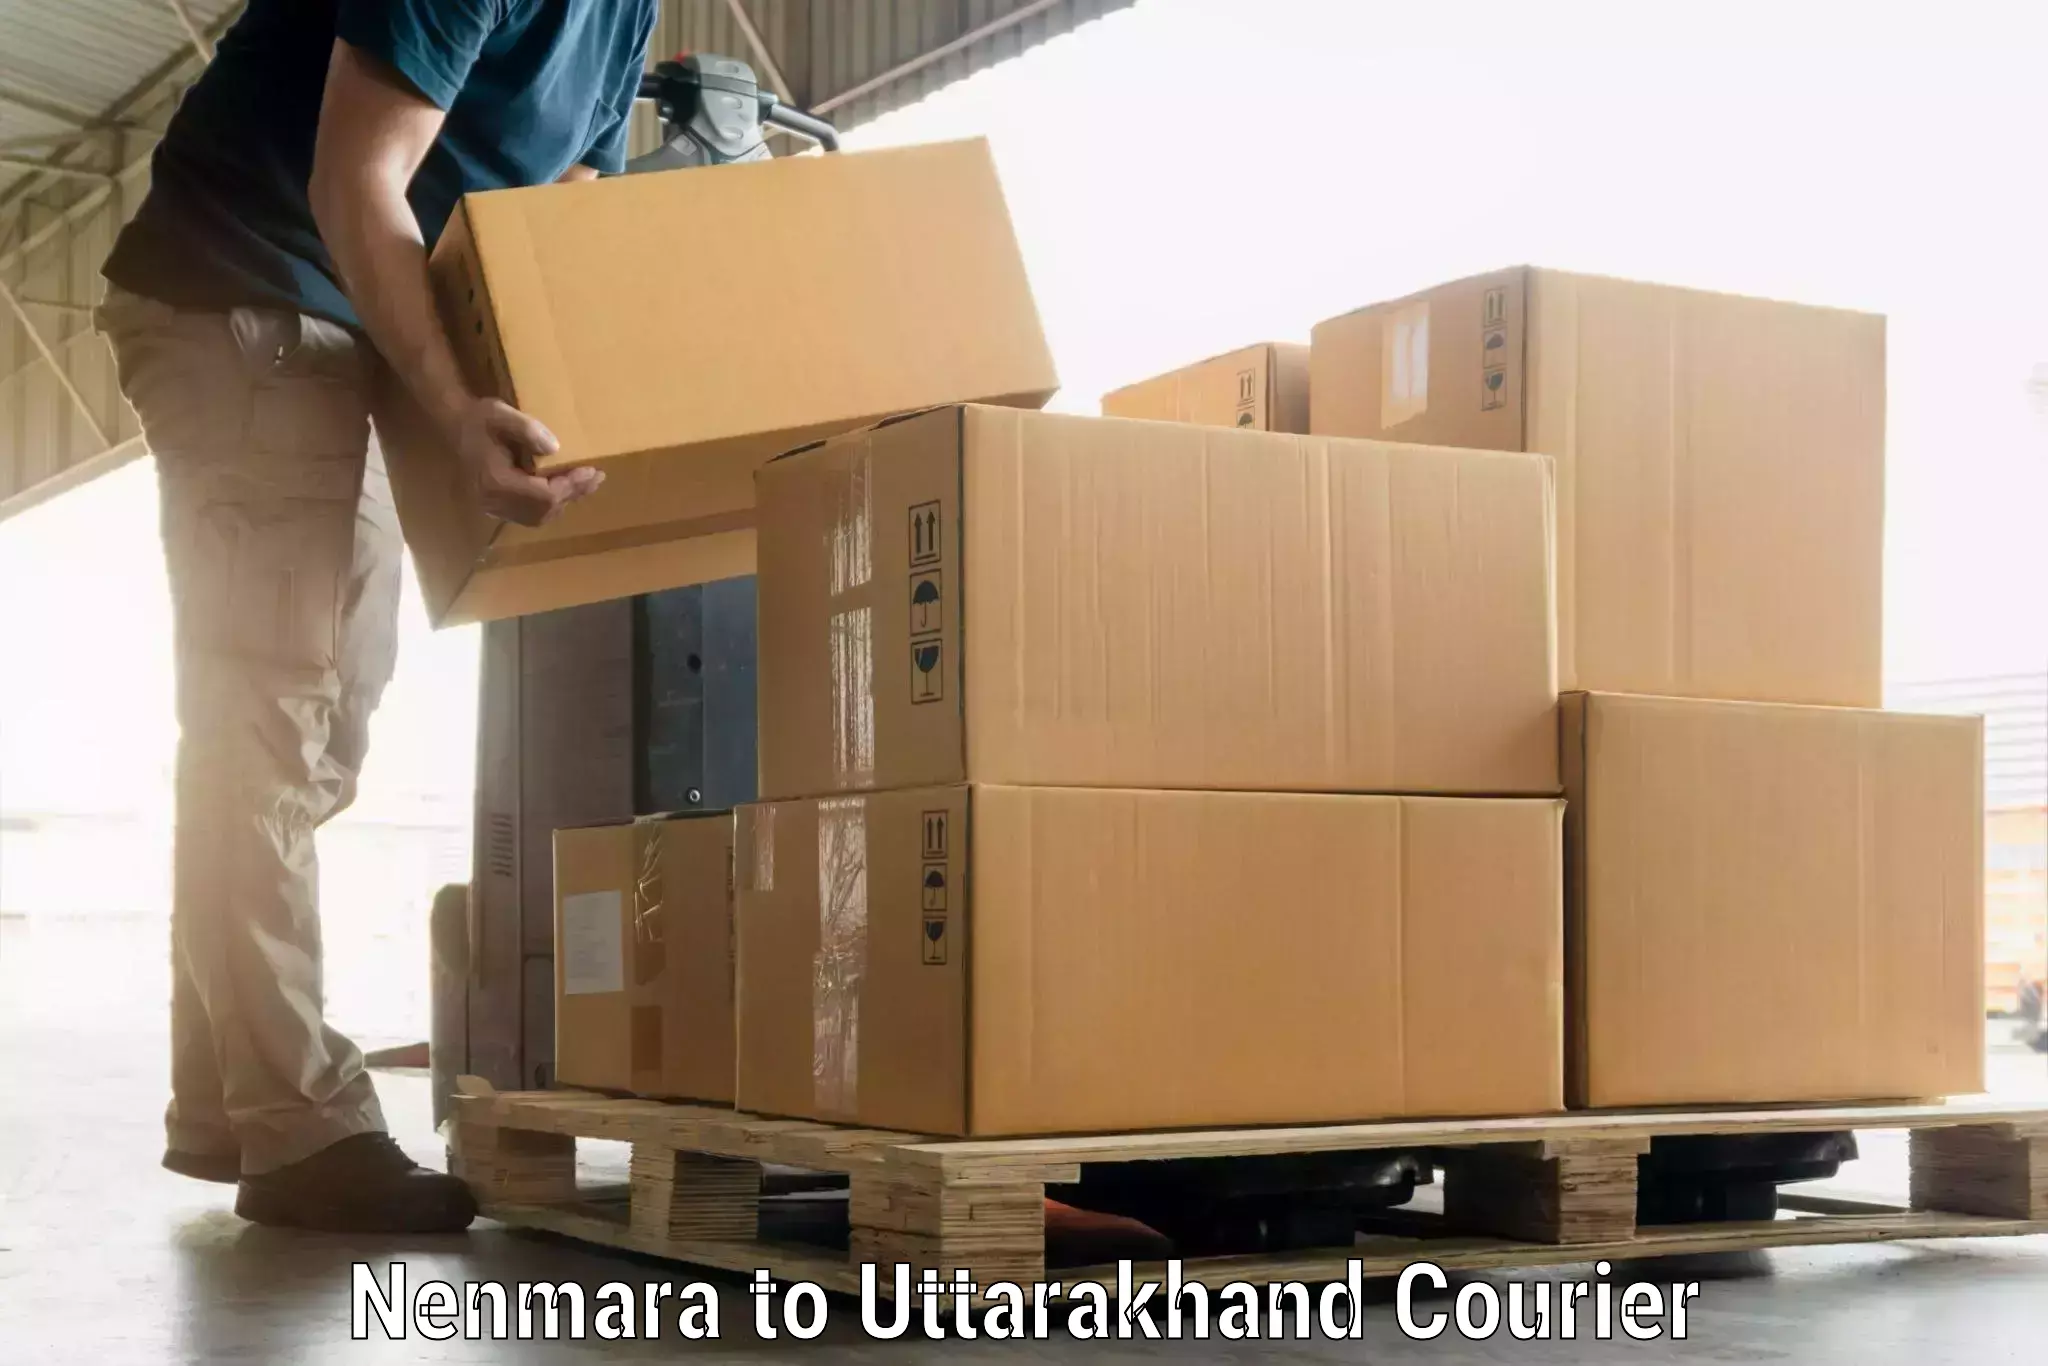 Baggage transport estimate Nenmara to Kashipur